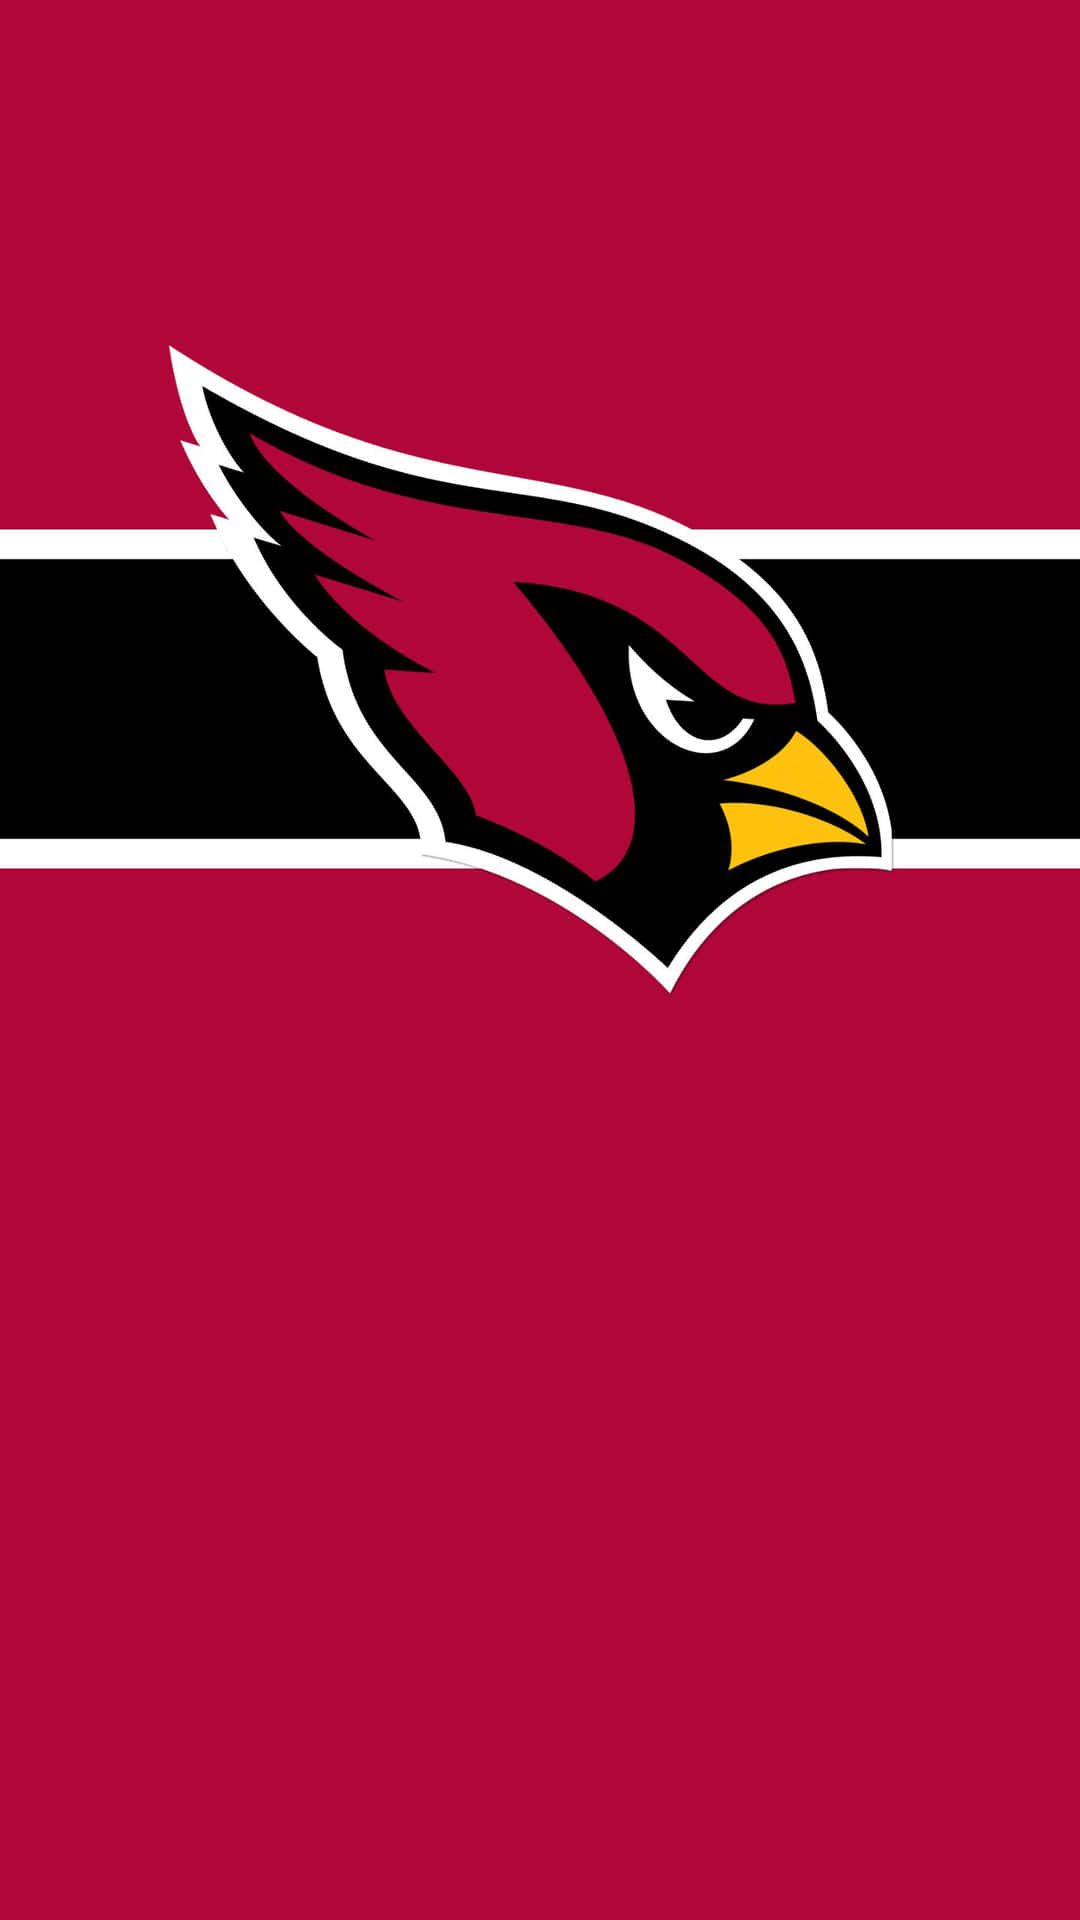 Download Arizona Cardinals Logo Wallpaper | Wallpapers.com